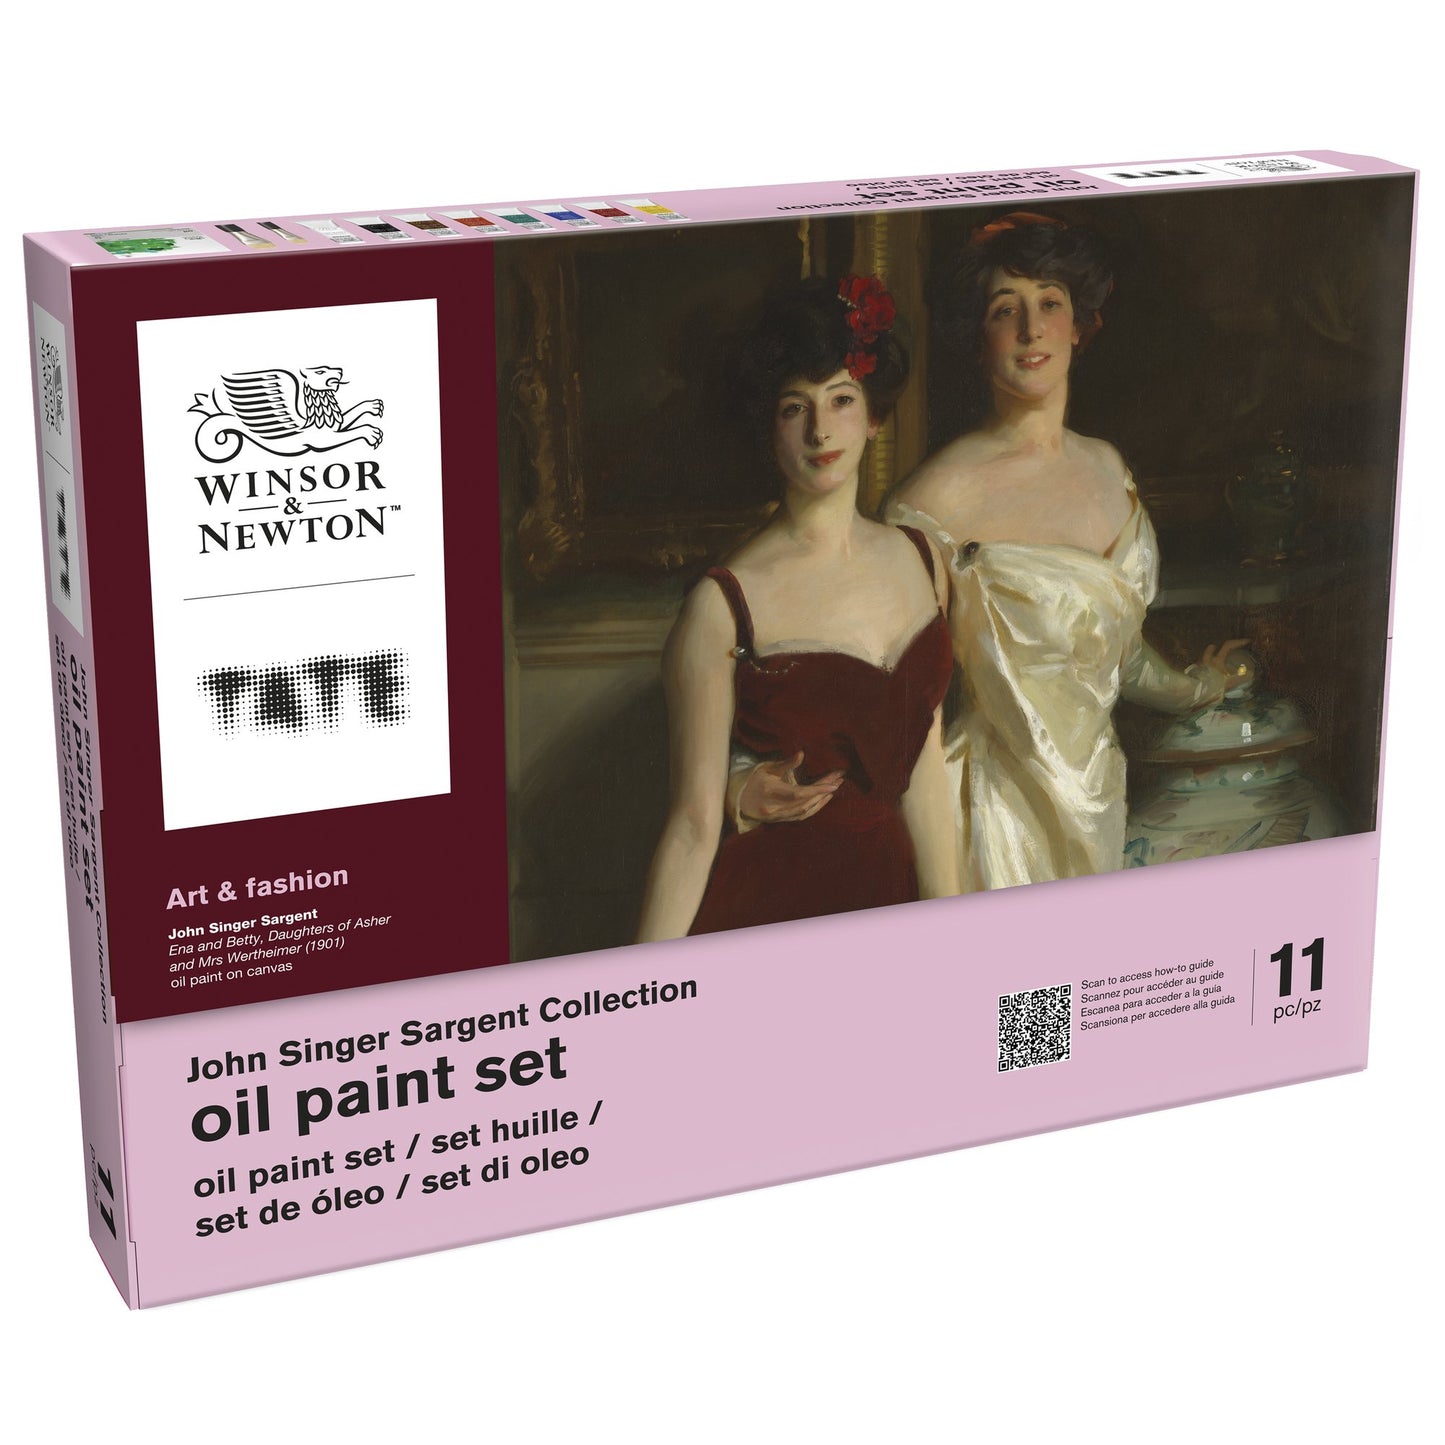 John S. Sargent collection Oil paint set - Art&Fashion